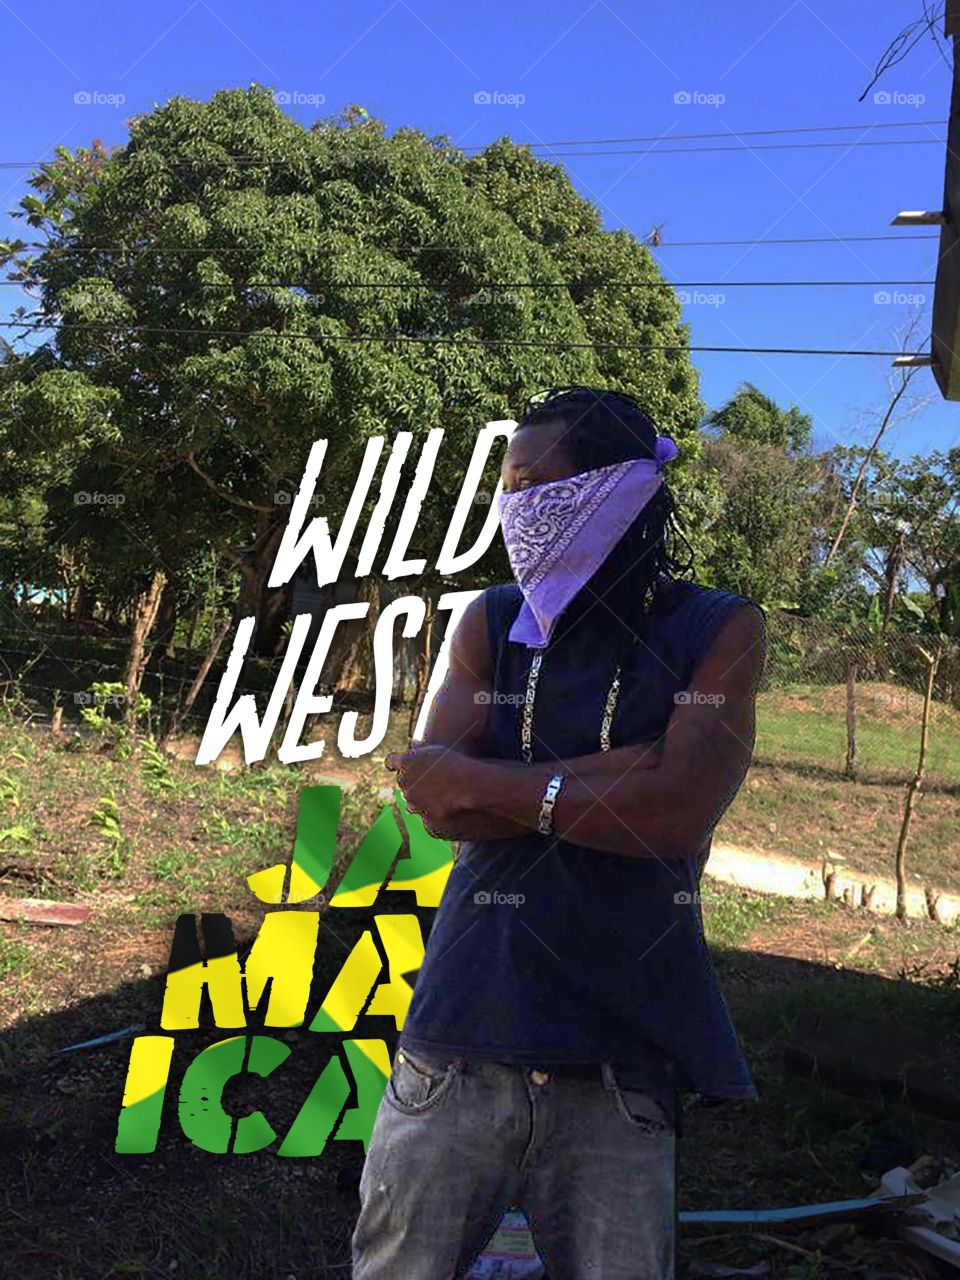 Wild West Jamaica